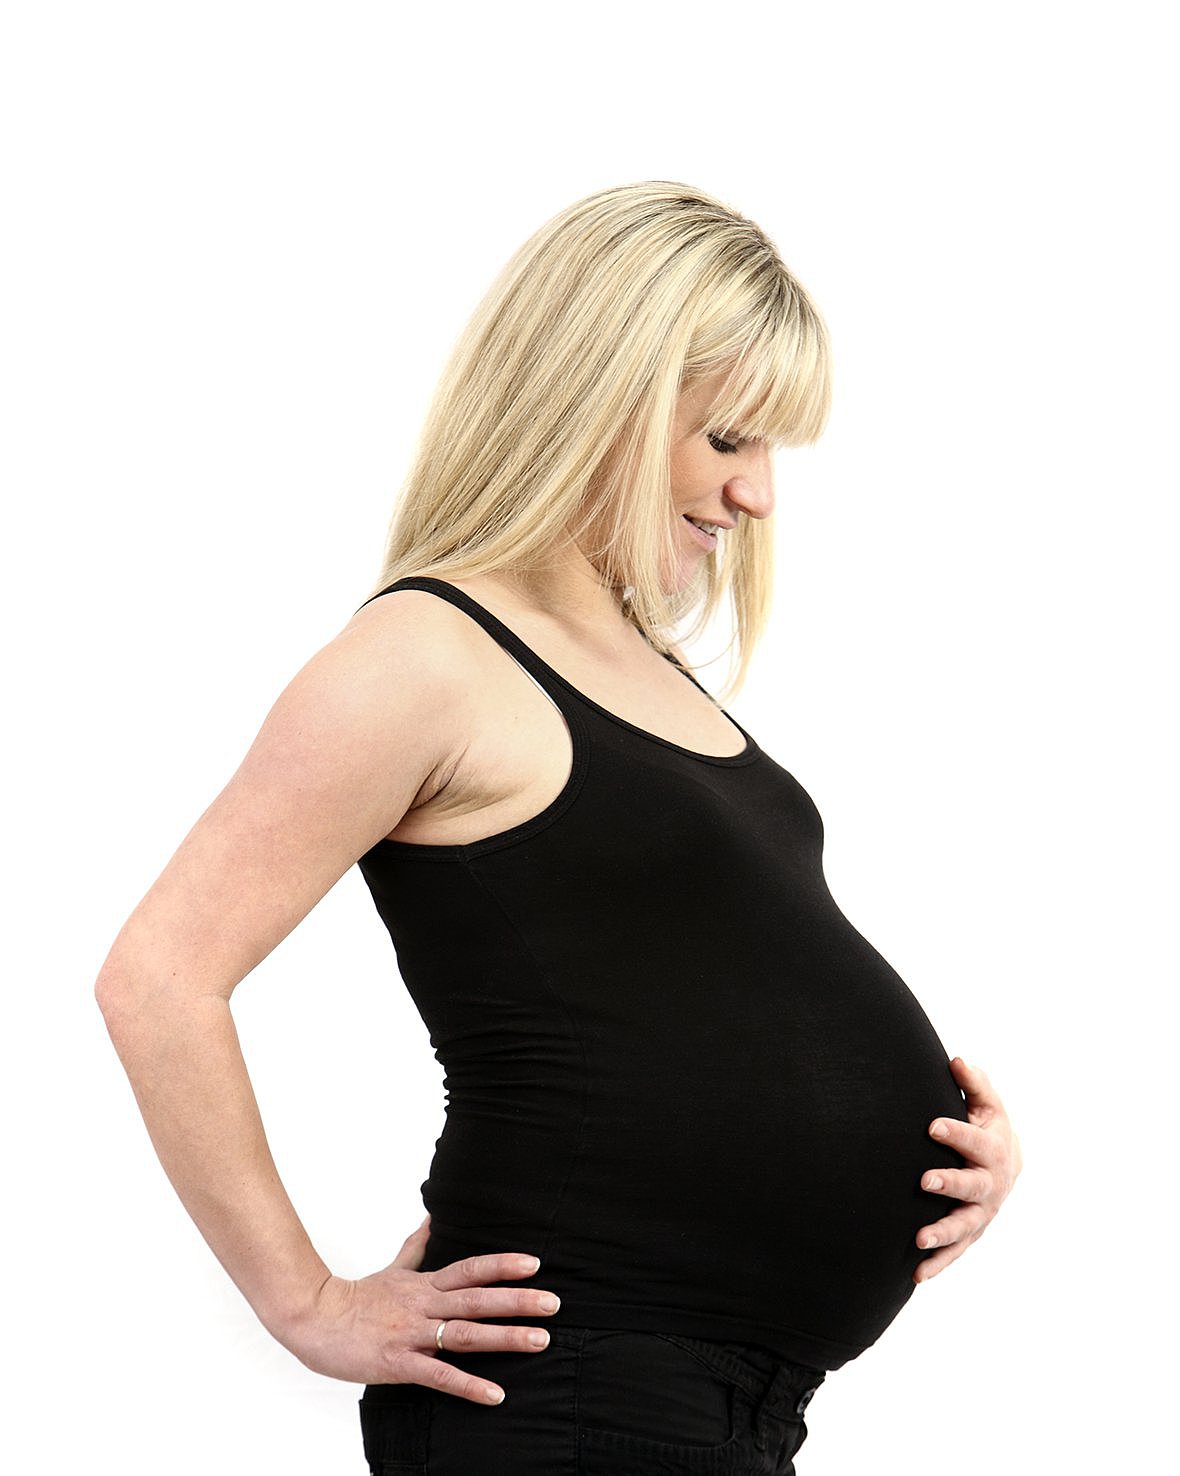 Foto: Eine schwangere Frau hält ihren Bauch.